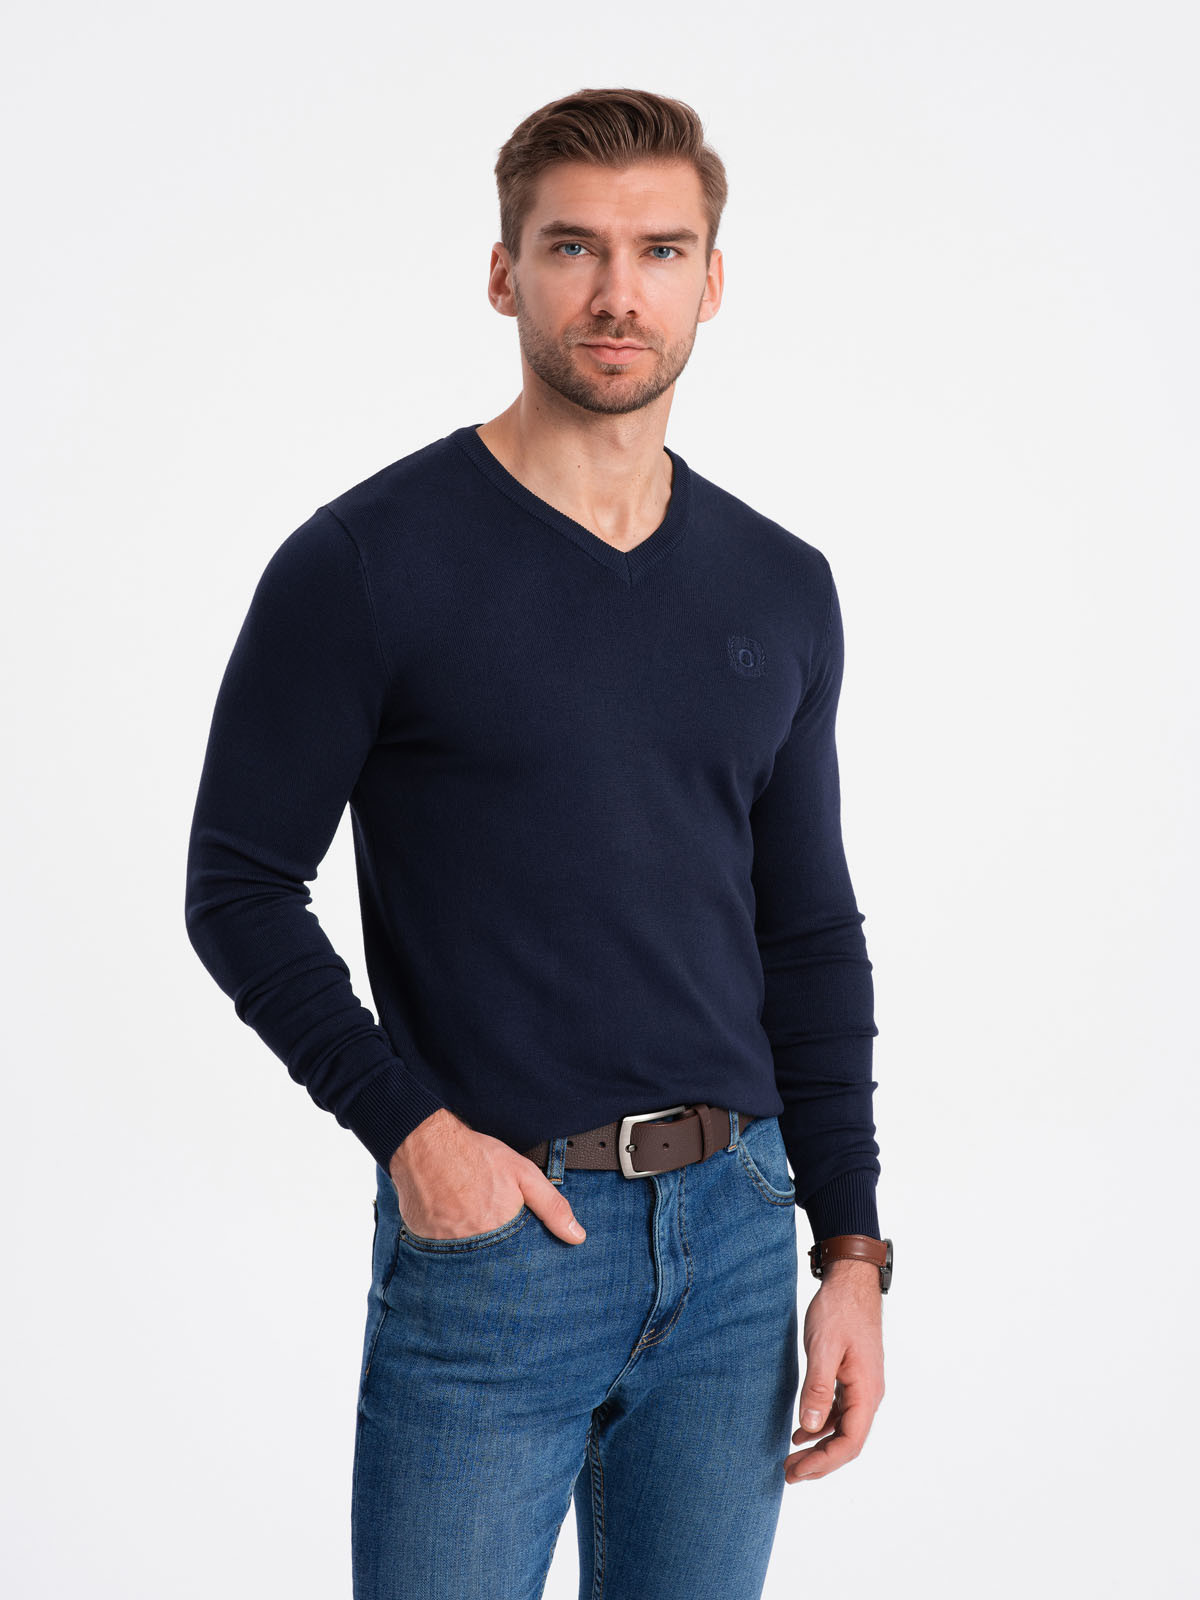 Elegant men's sweater with a v-neck - navy blue V22 OM-SWBS V22 OM-SWBS - 0107